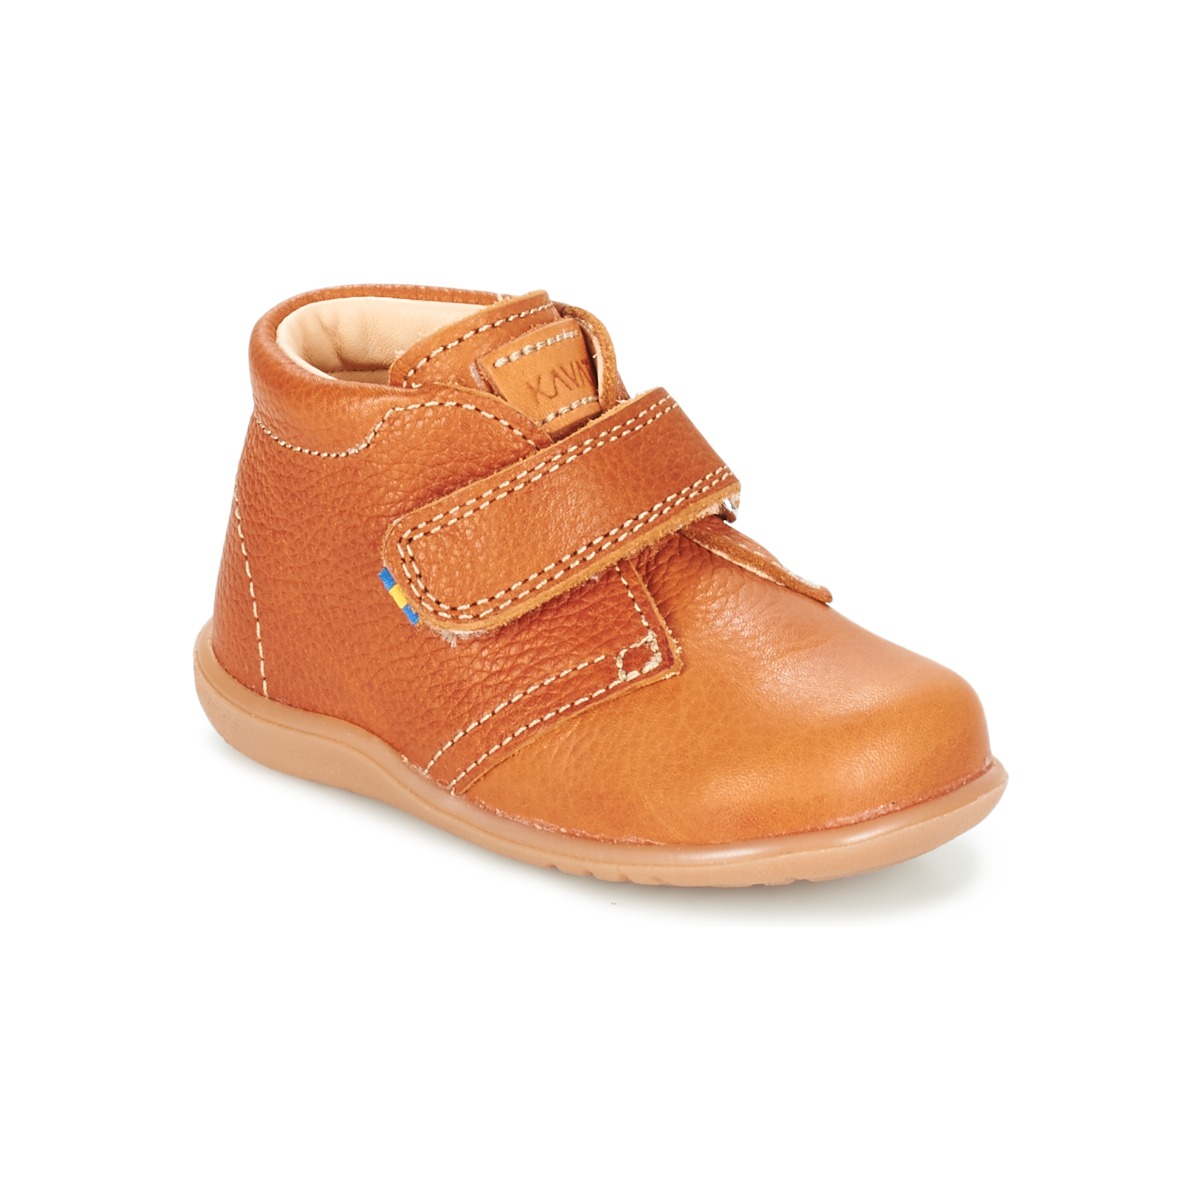 鞋子 儿童 短筒靴 Kavat HAMMAR 棕色